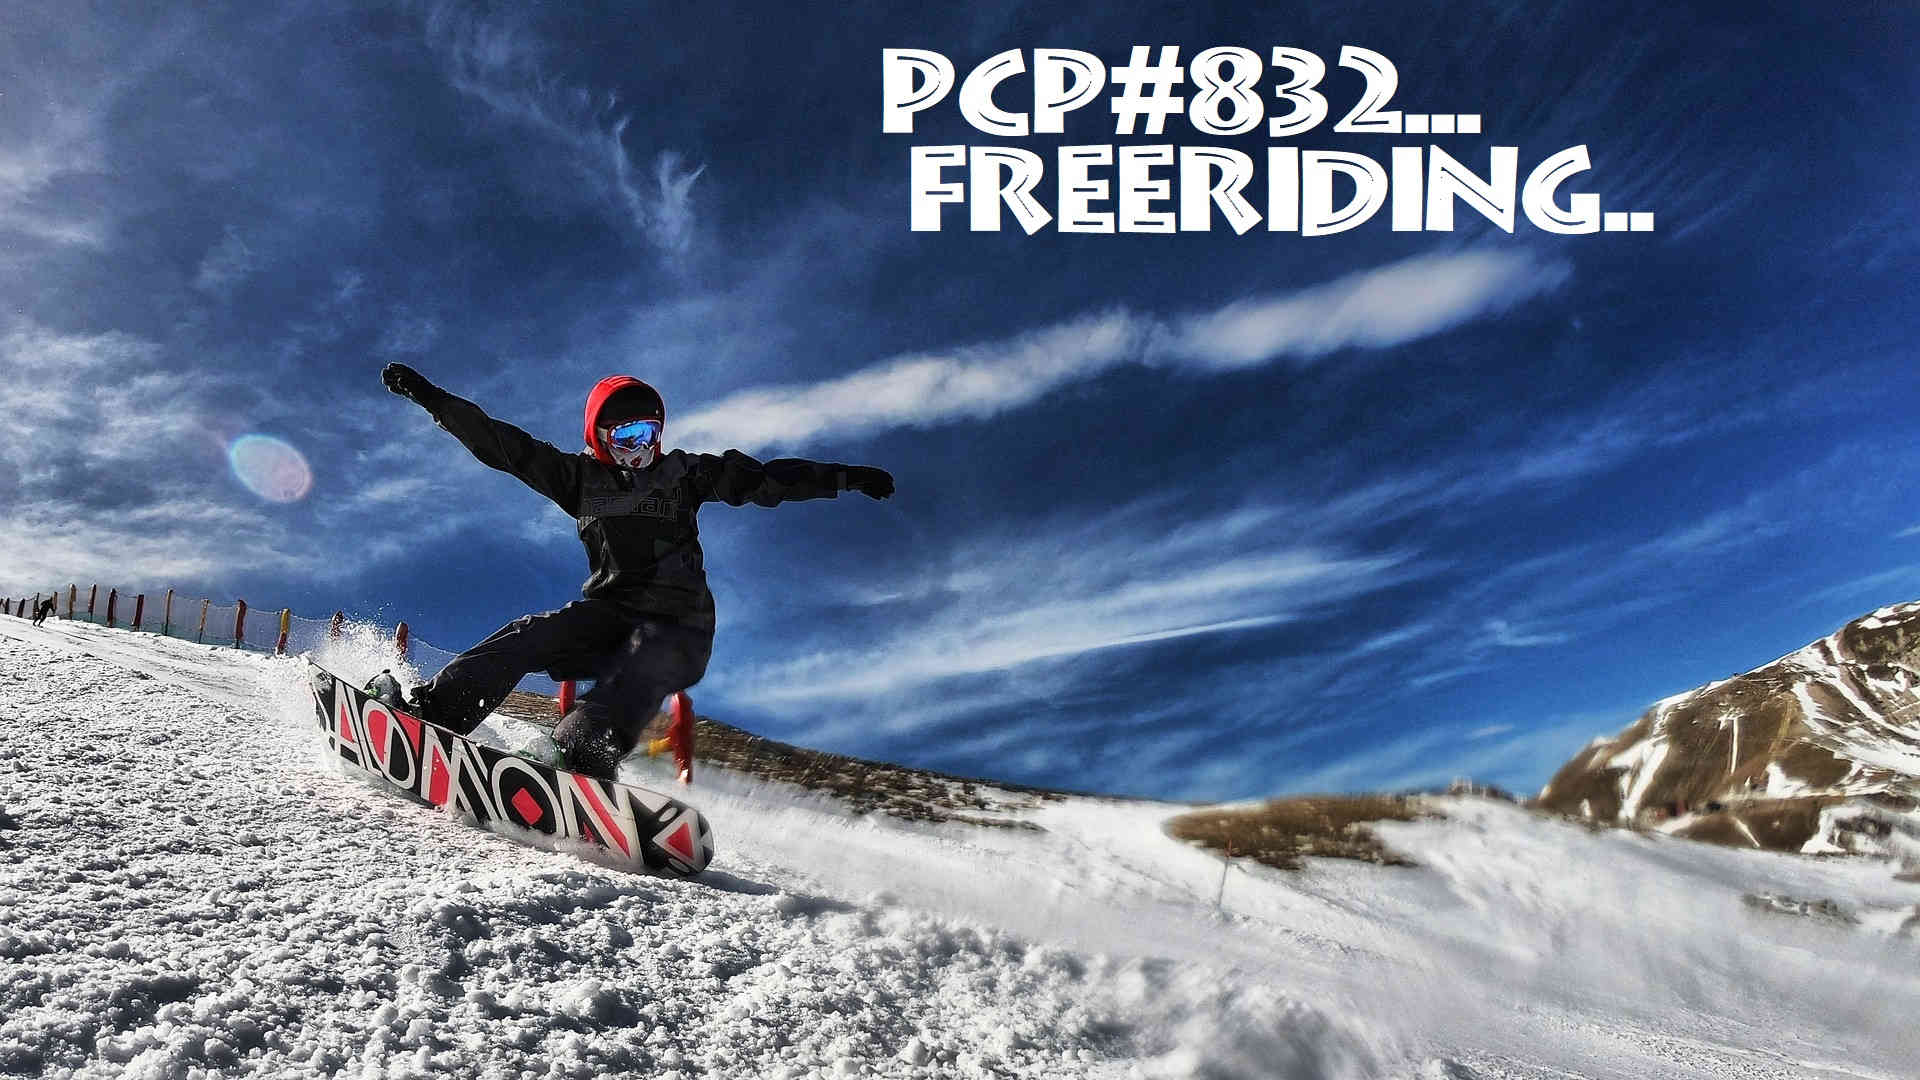 PCP#832... Freeriding...